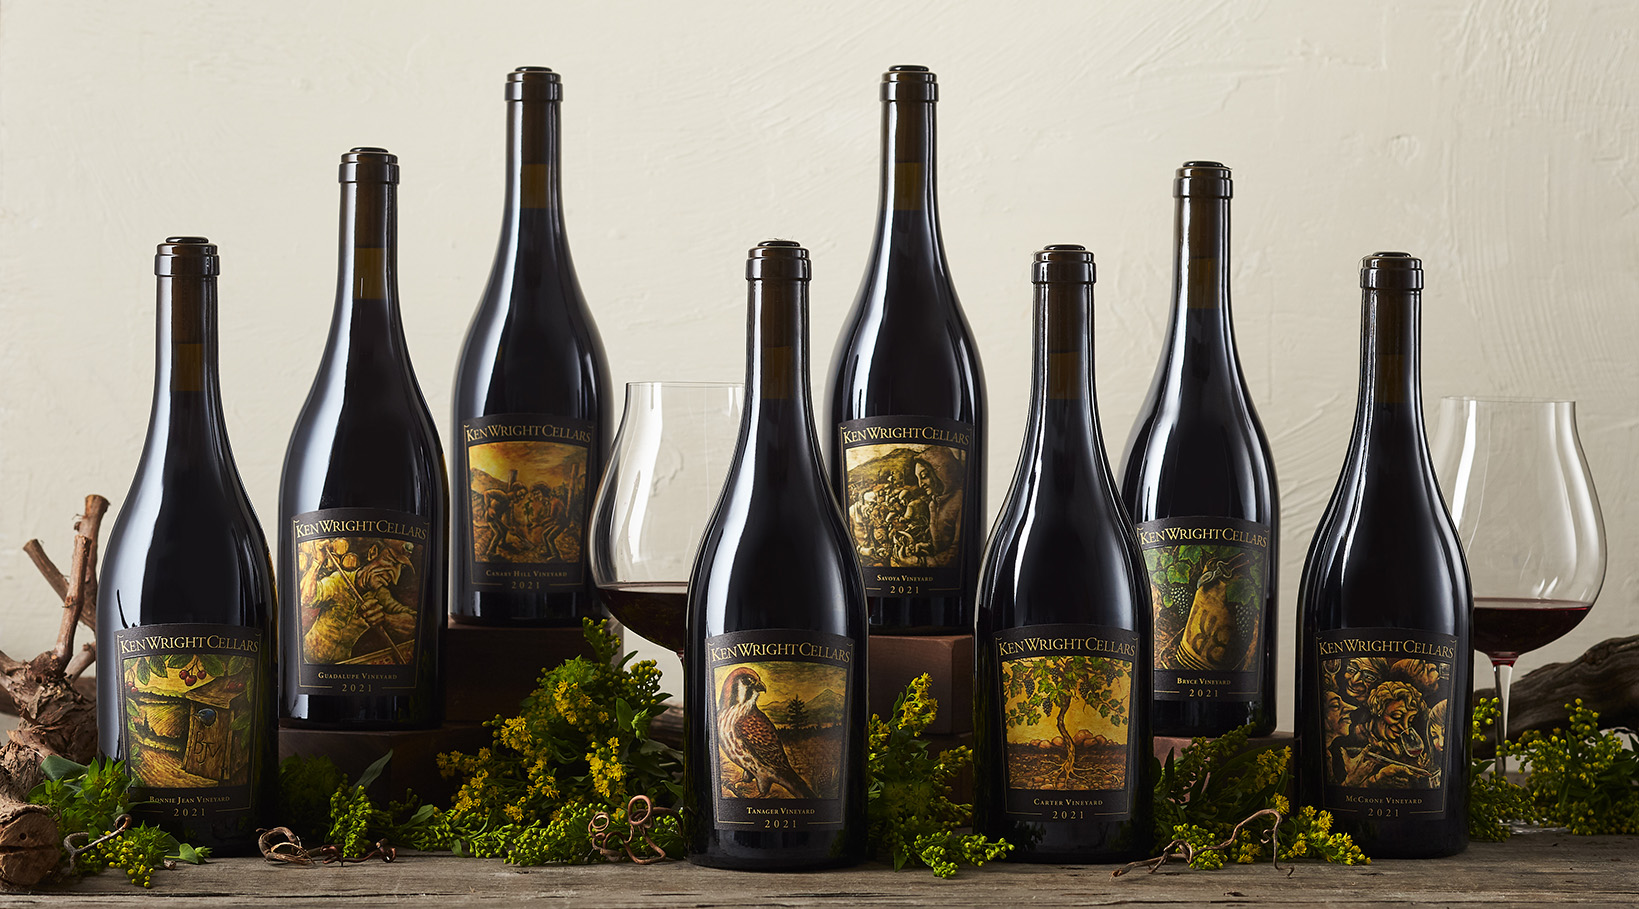 8 bottles of Ken Wright Cellars Pinot noir